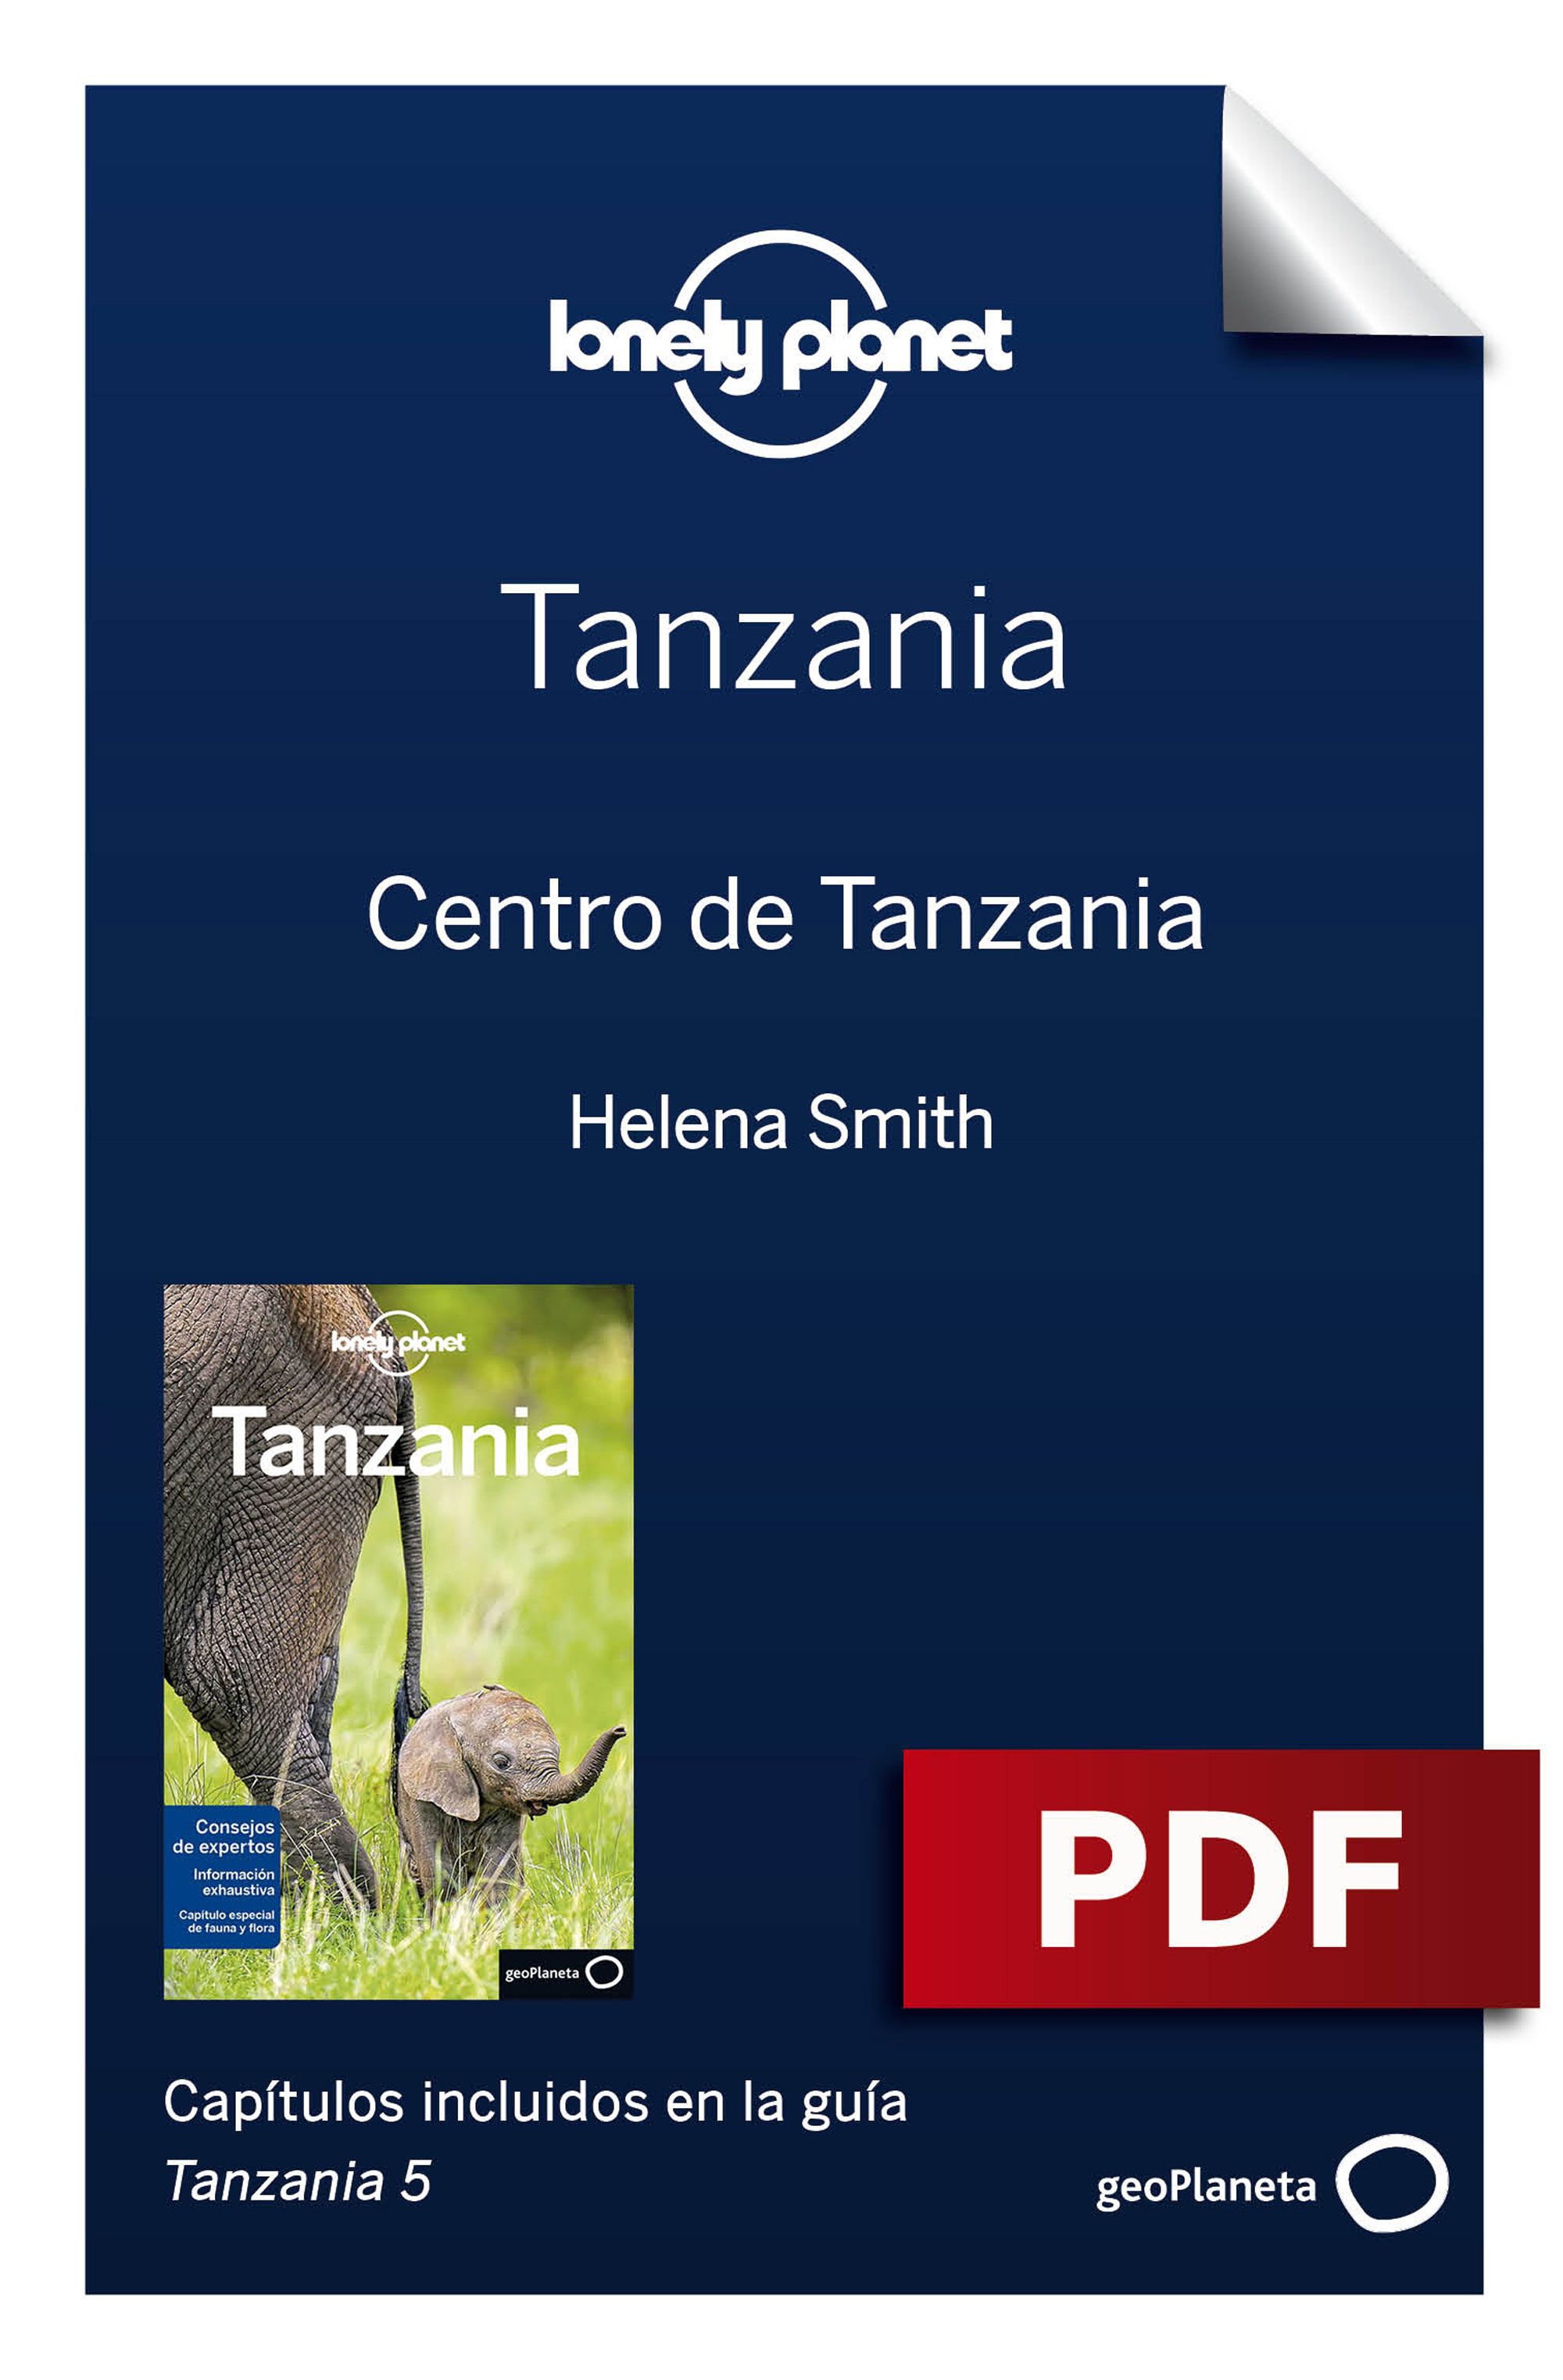 Centro de Tanzania